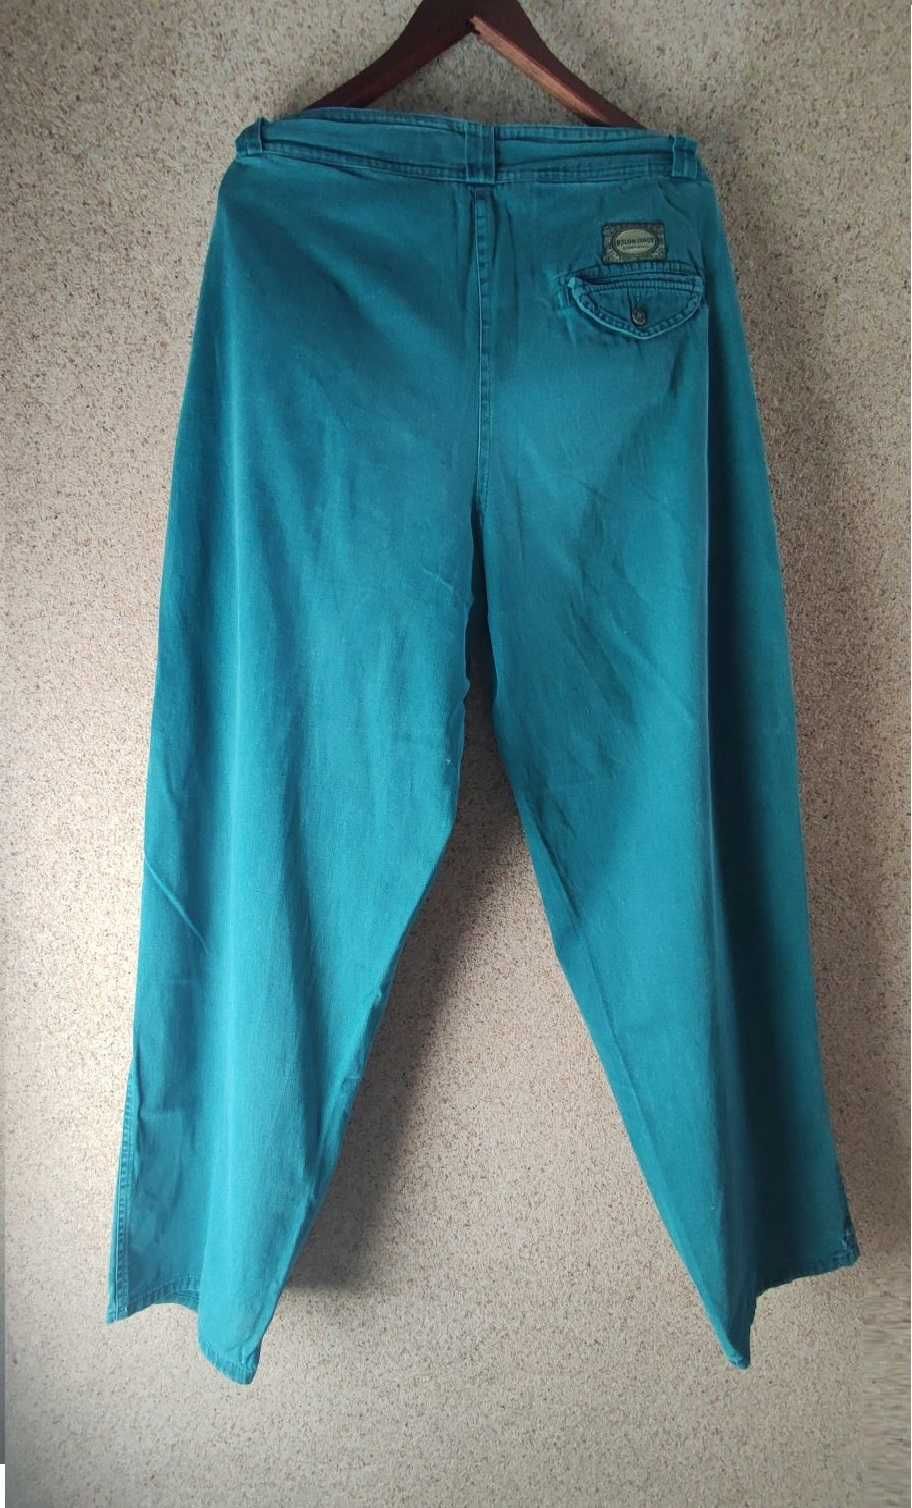 XL Bulur Italy spodnie męskie bawełniane robocze letnie szerokie